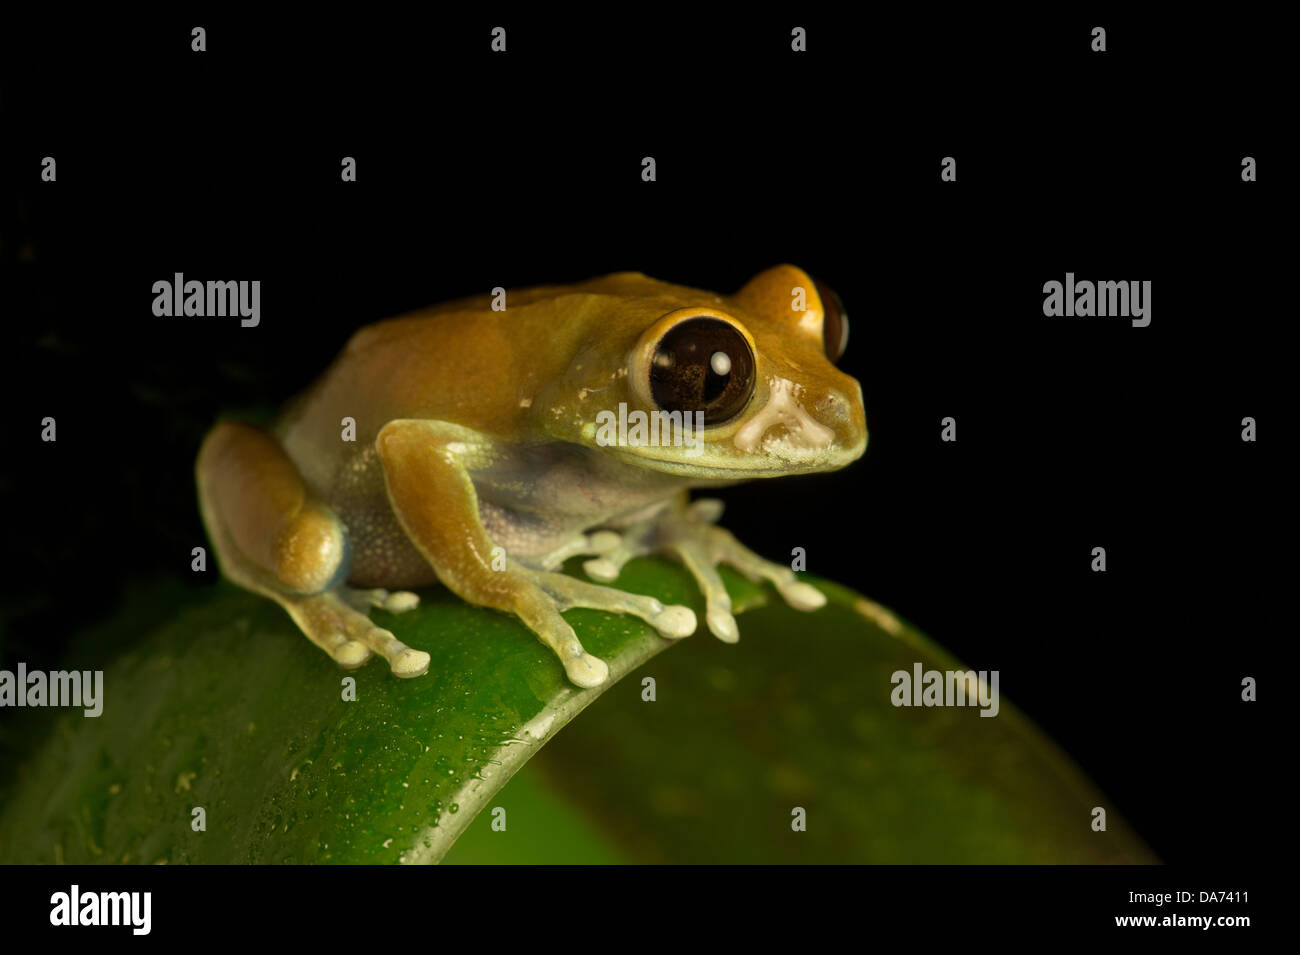 Big Eyed Frog on leaf Stock Photo